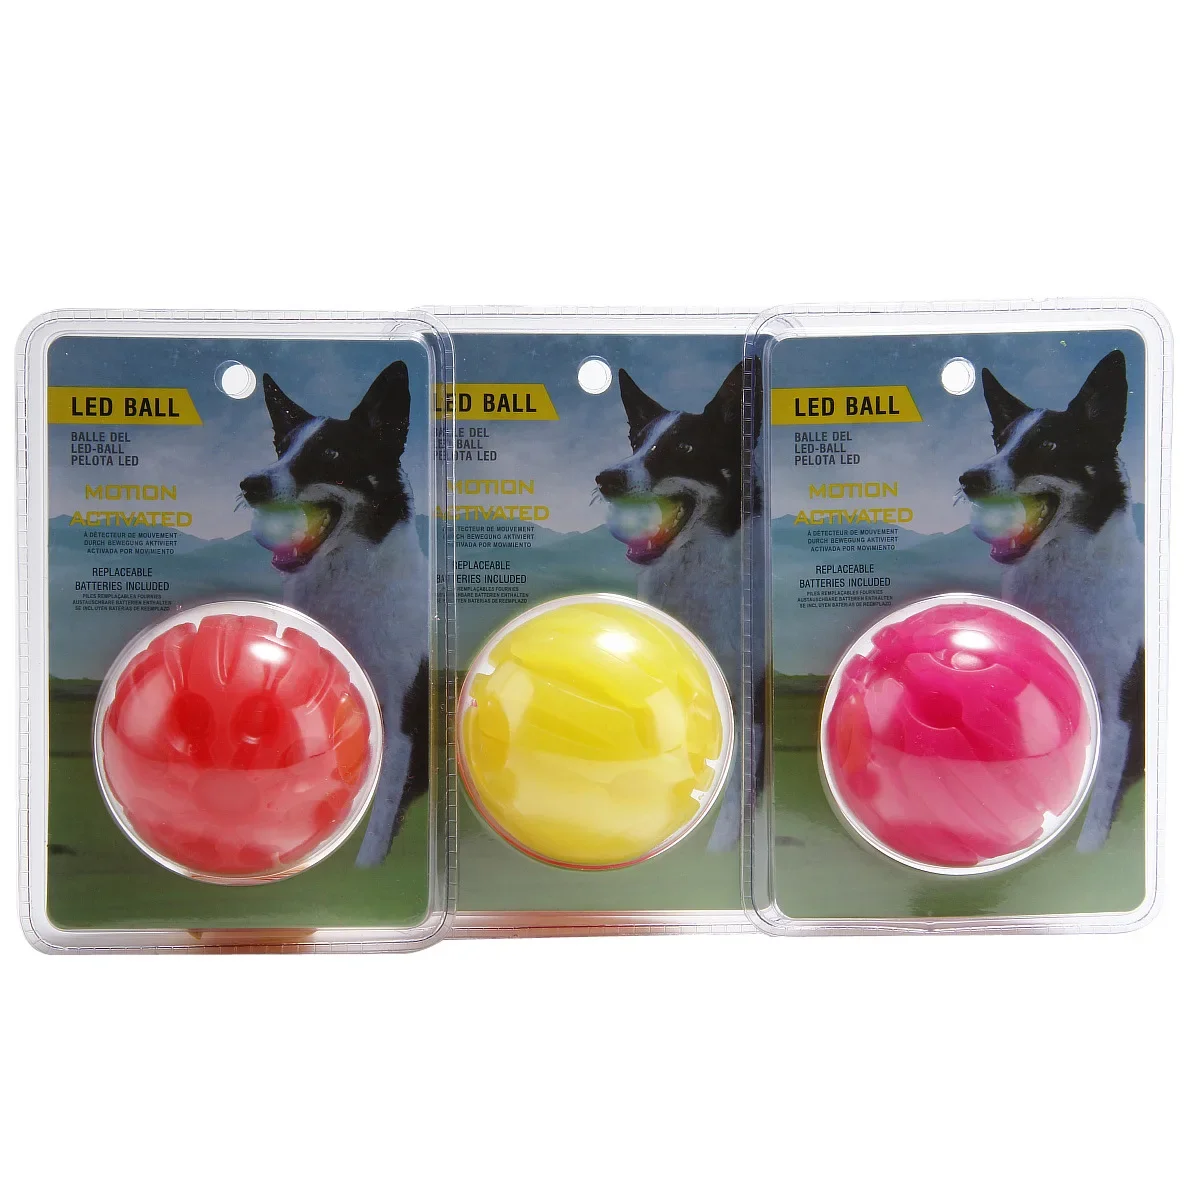 Boule-lumineuse-LED-pour-chien-jouet-m-cher-Transformation-color-e-fournitures-pour-chiots-4